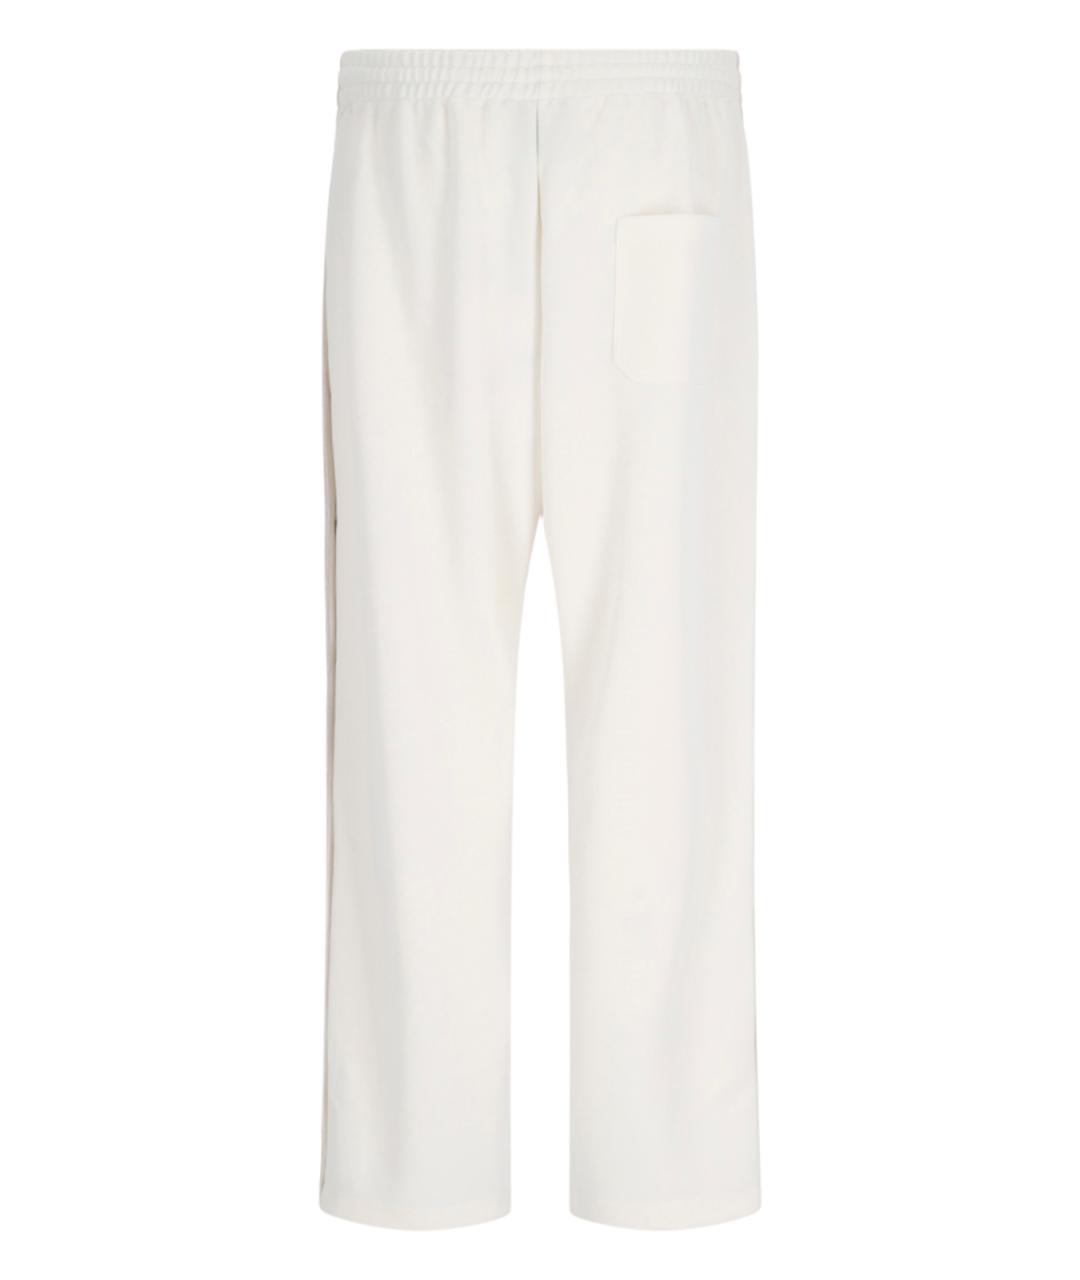 GOLDEN GOOSE DELUXE BRAND Белые повседневные брюки, фото 2